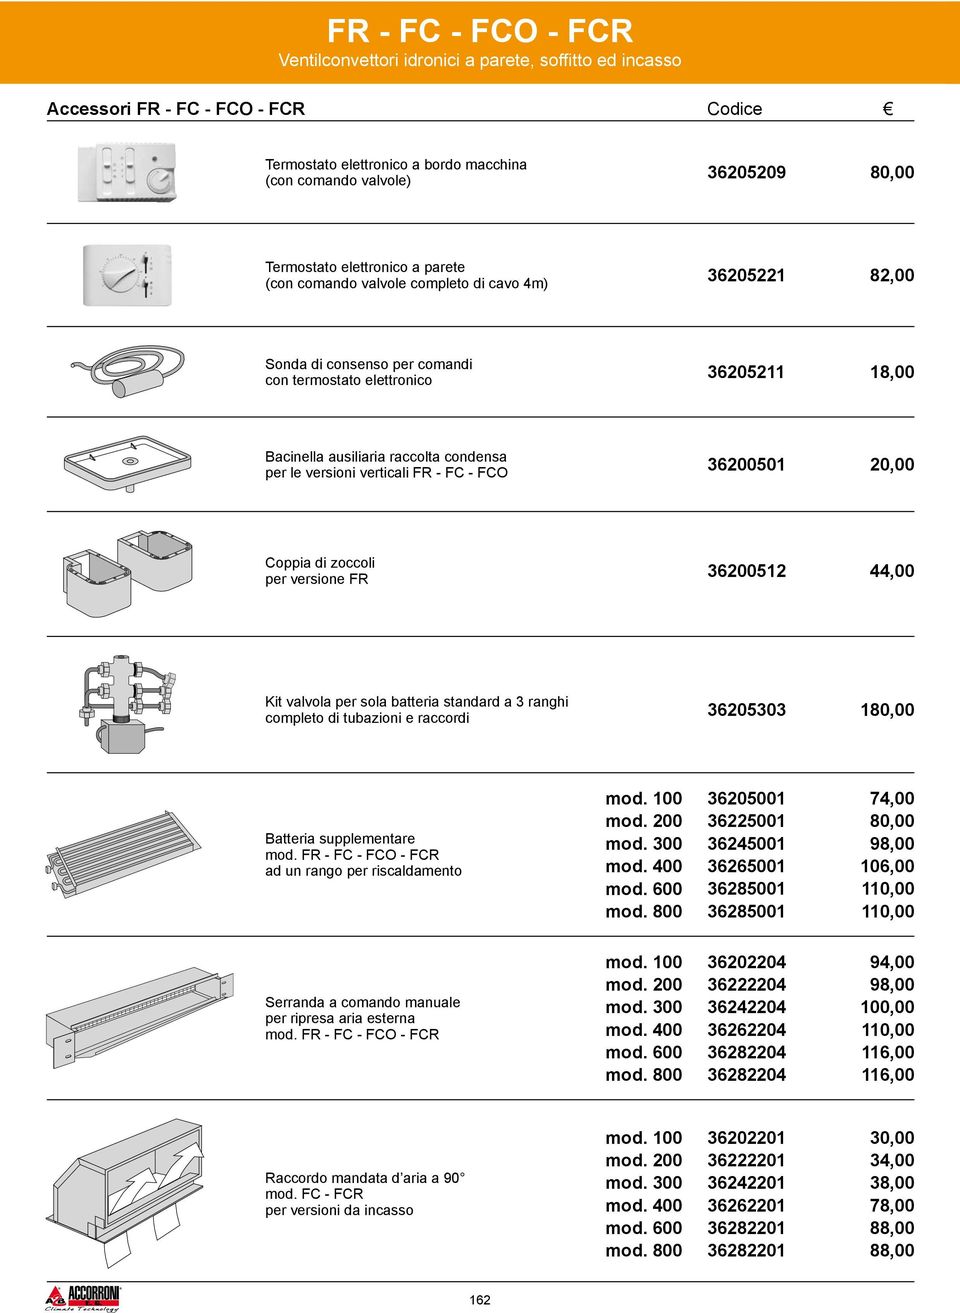 36512 44,00 Kit valvola per sola batteria standard a 3 ranghi completo di tubazioni e raccordi 36205303 1 Batteria supplementare mod.